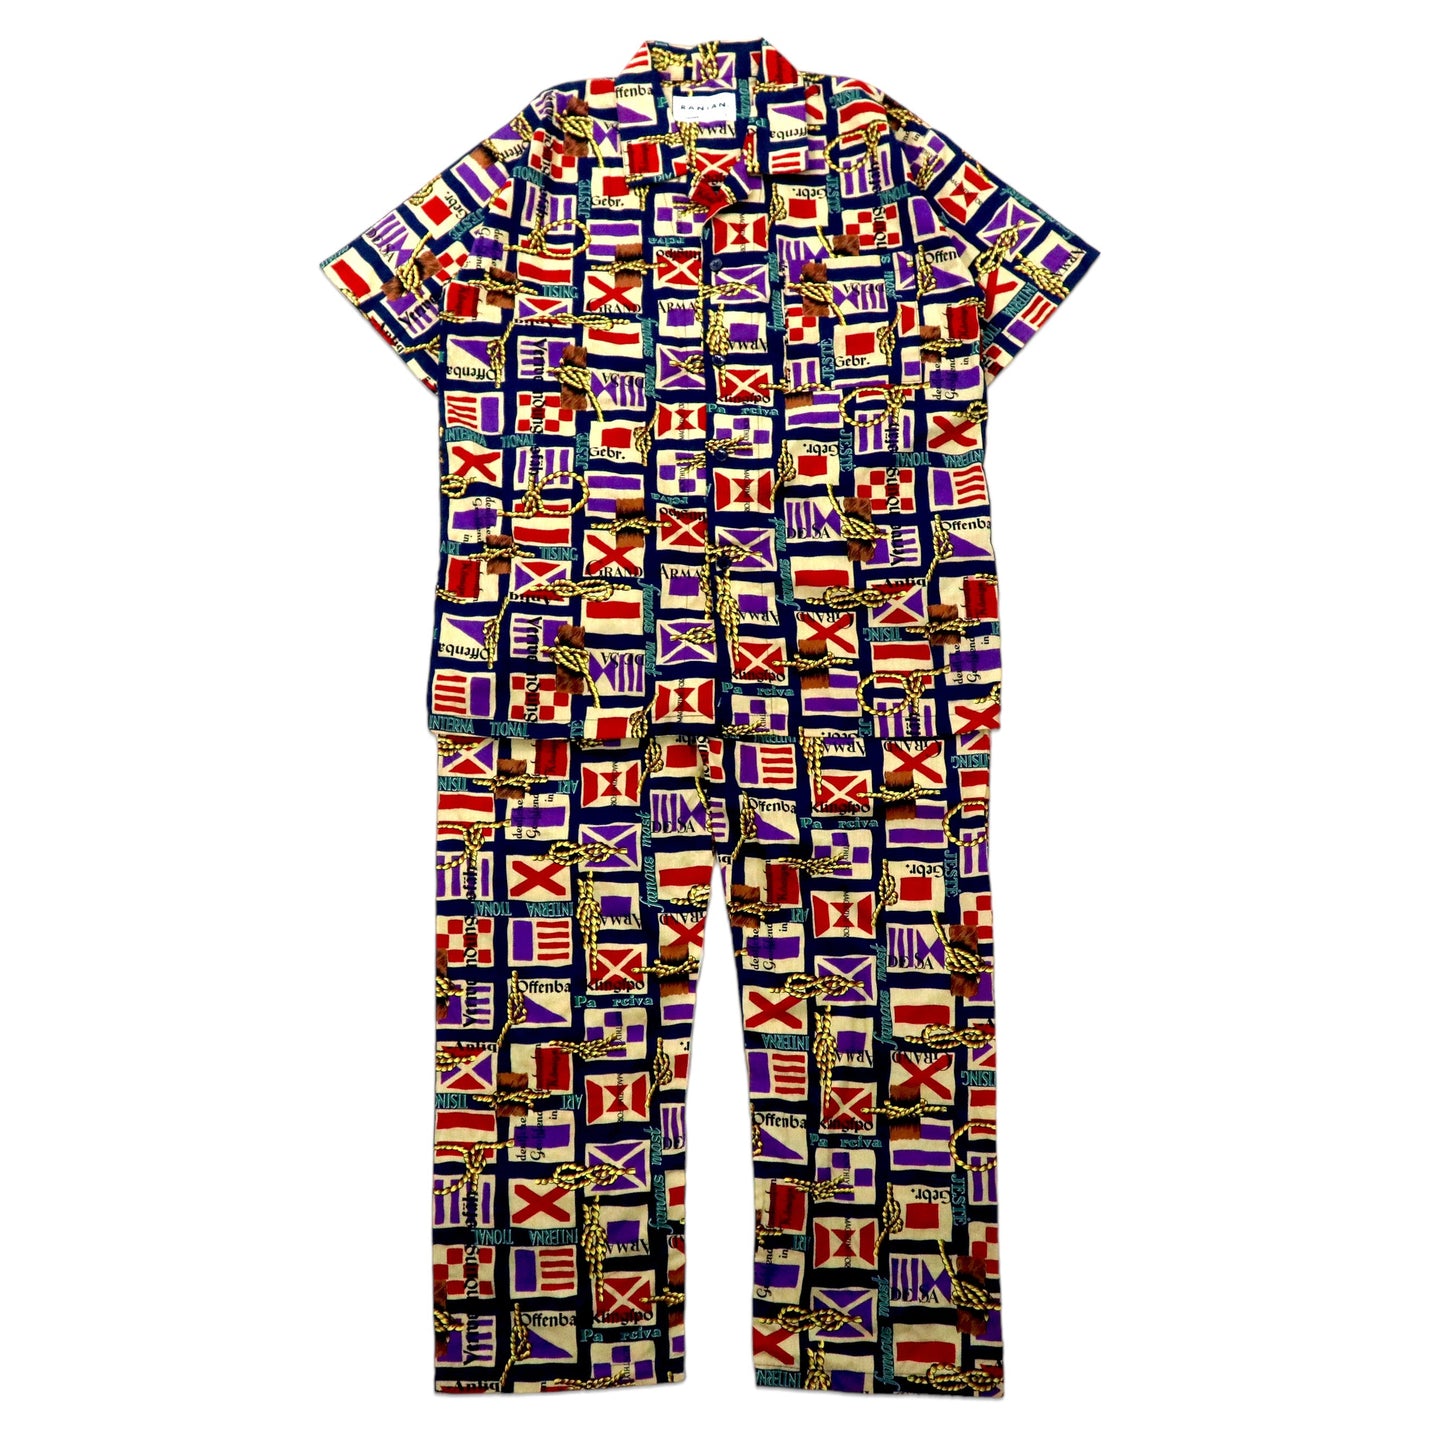 RANIAN イージーセットアップ パジャマ 半袖オープンカラーシャツ L マルチカラー コットン 総柄 万国旗 日本製